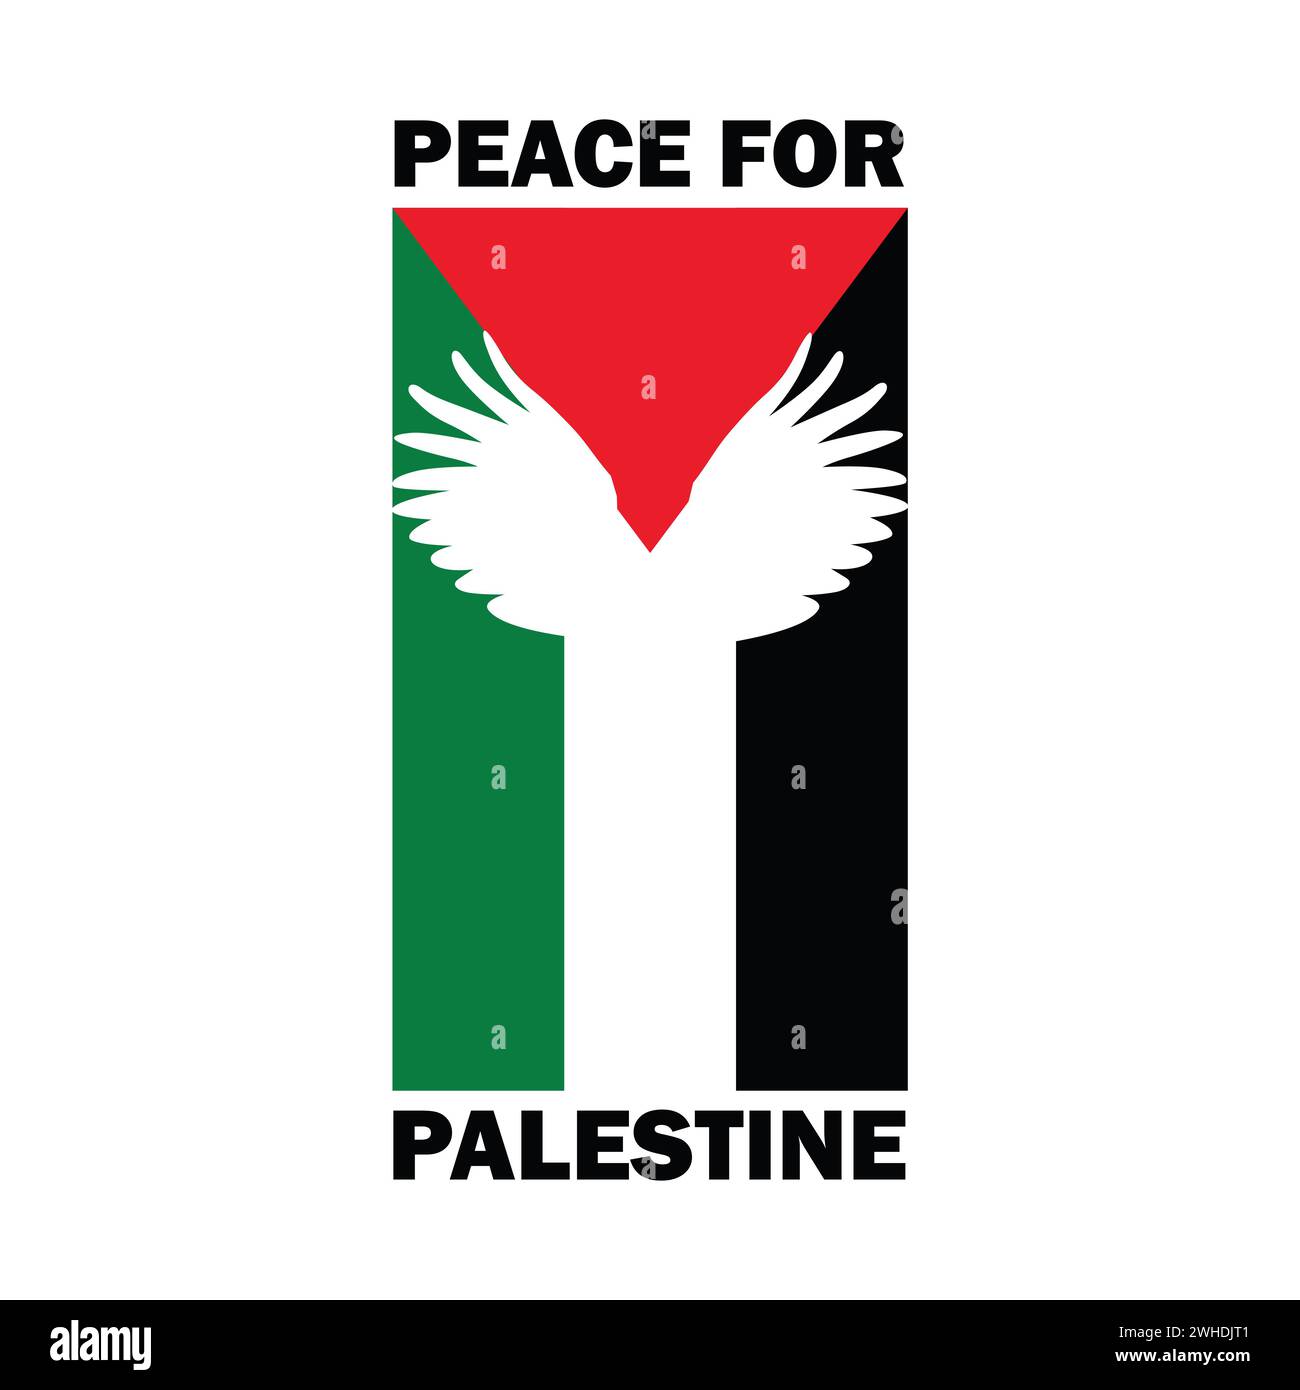 Manifesto di guerra Palestina contro Israele, modello, design di striscioni. Siamo il modello vettoriale della Palestina. Salvare Gaza, salvare lo striscione di lettere della Palestina. Illustrazione Vettoriale